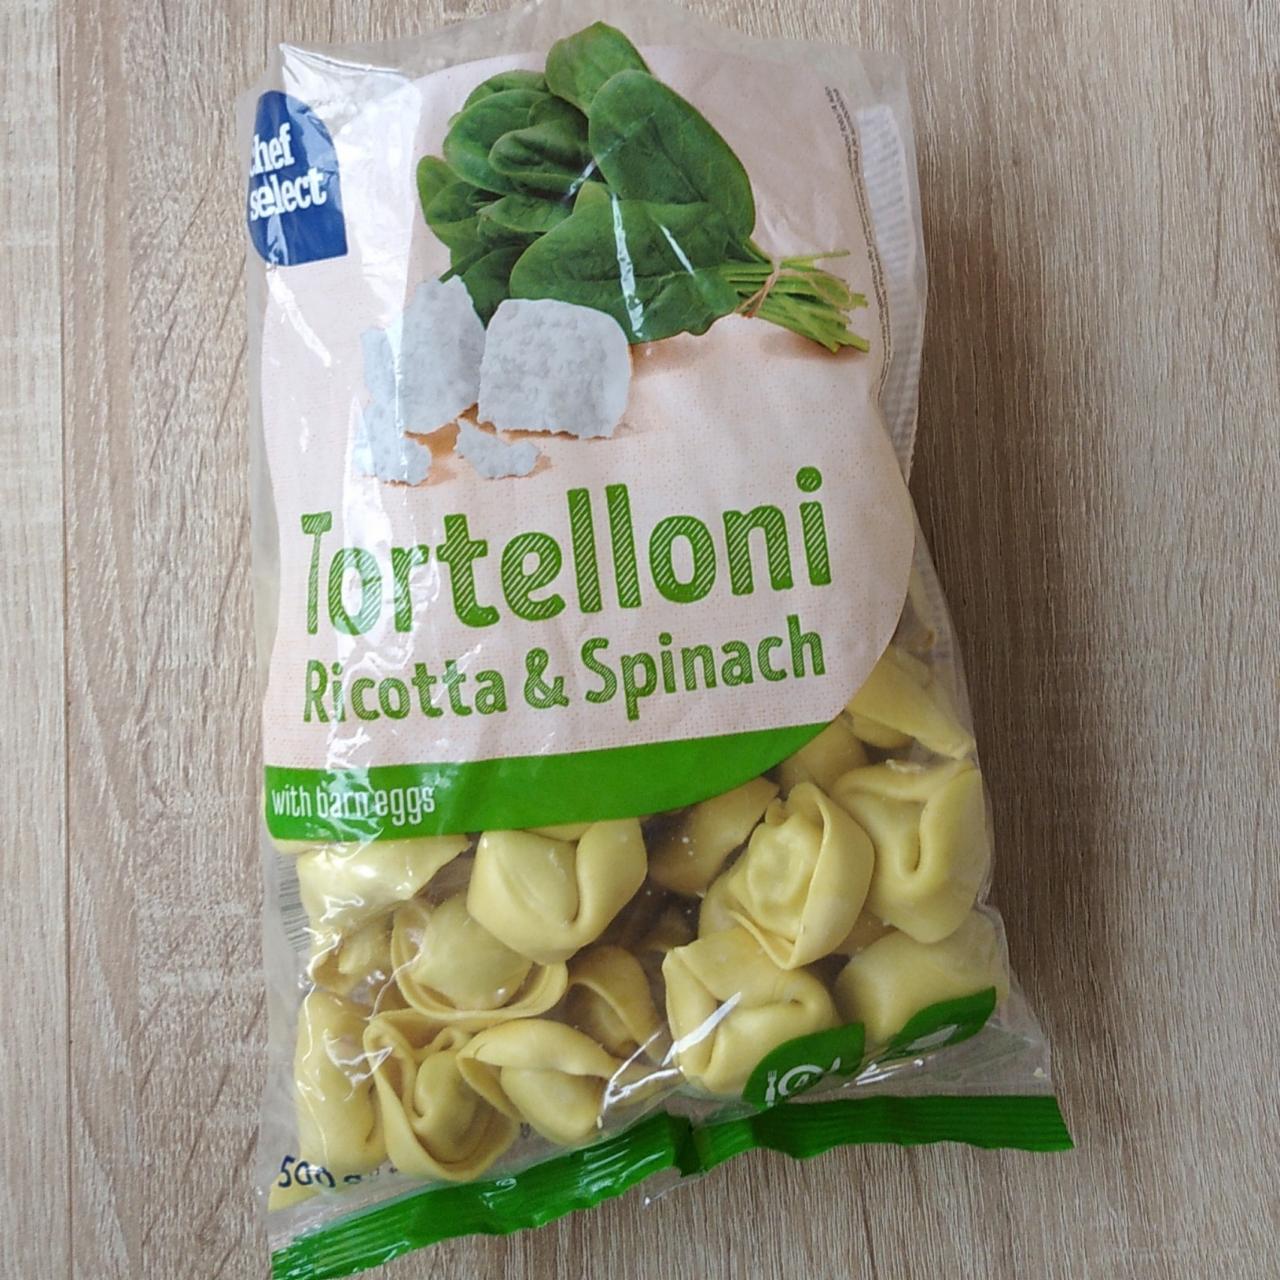 Fotografie - Tortelloni Ricotta & Spinach Chef Select